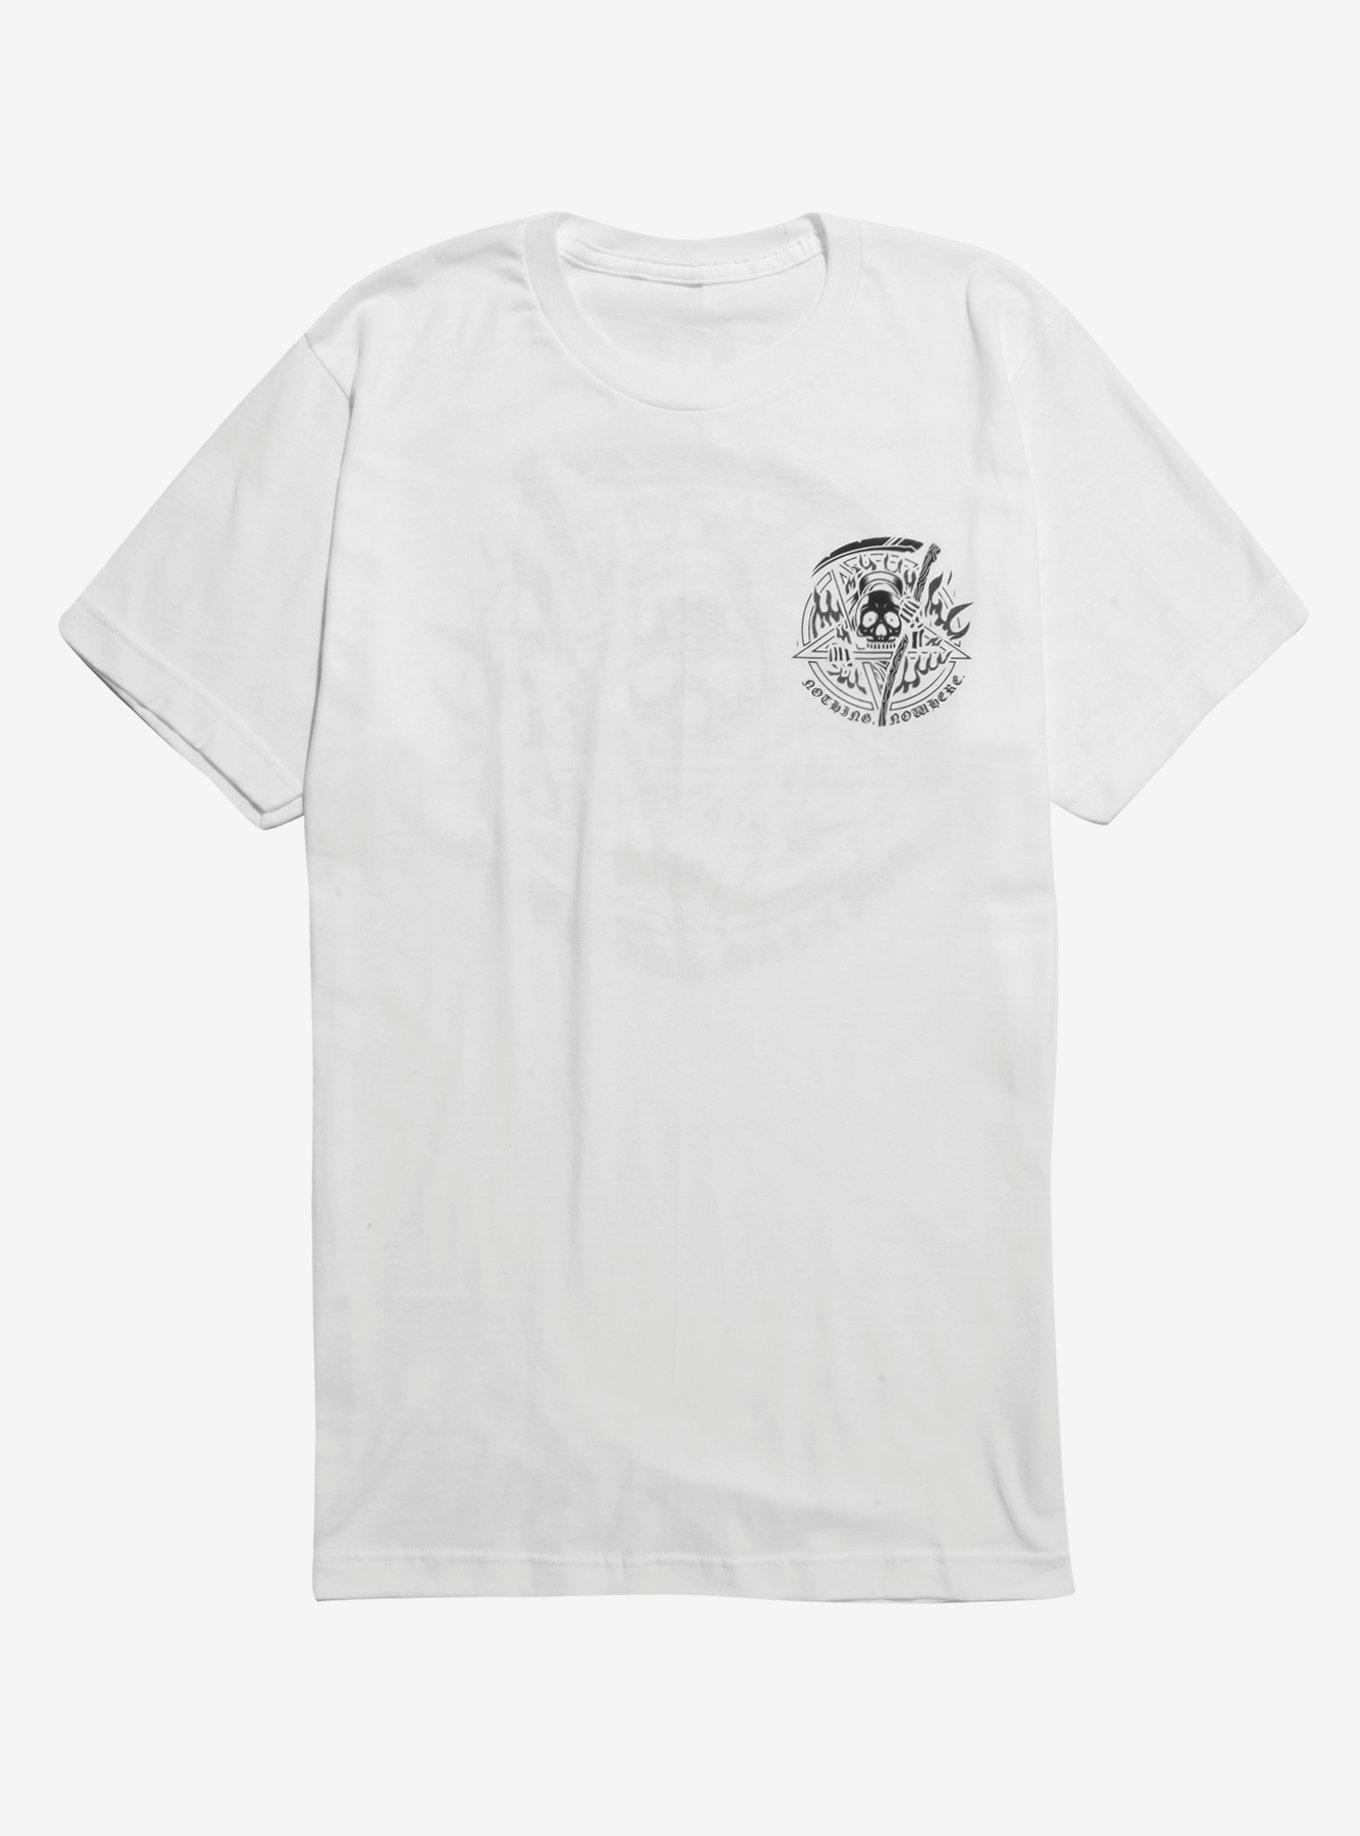 Nothing,Nowhere Pentagram Reaper T-Shirt, WHITE, hi-res